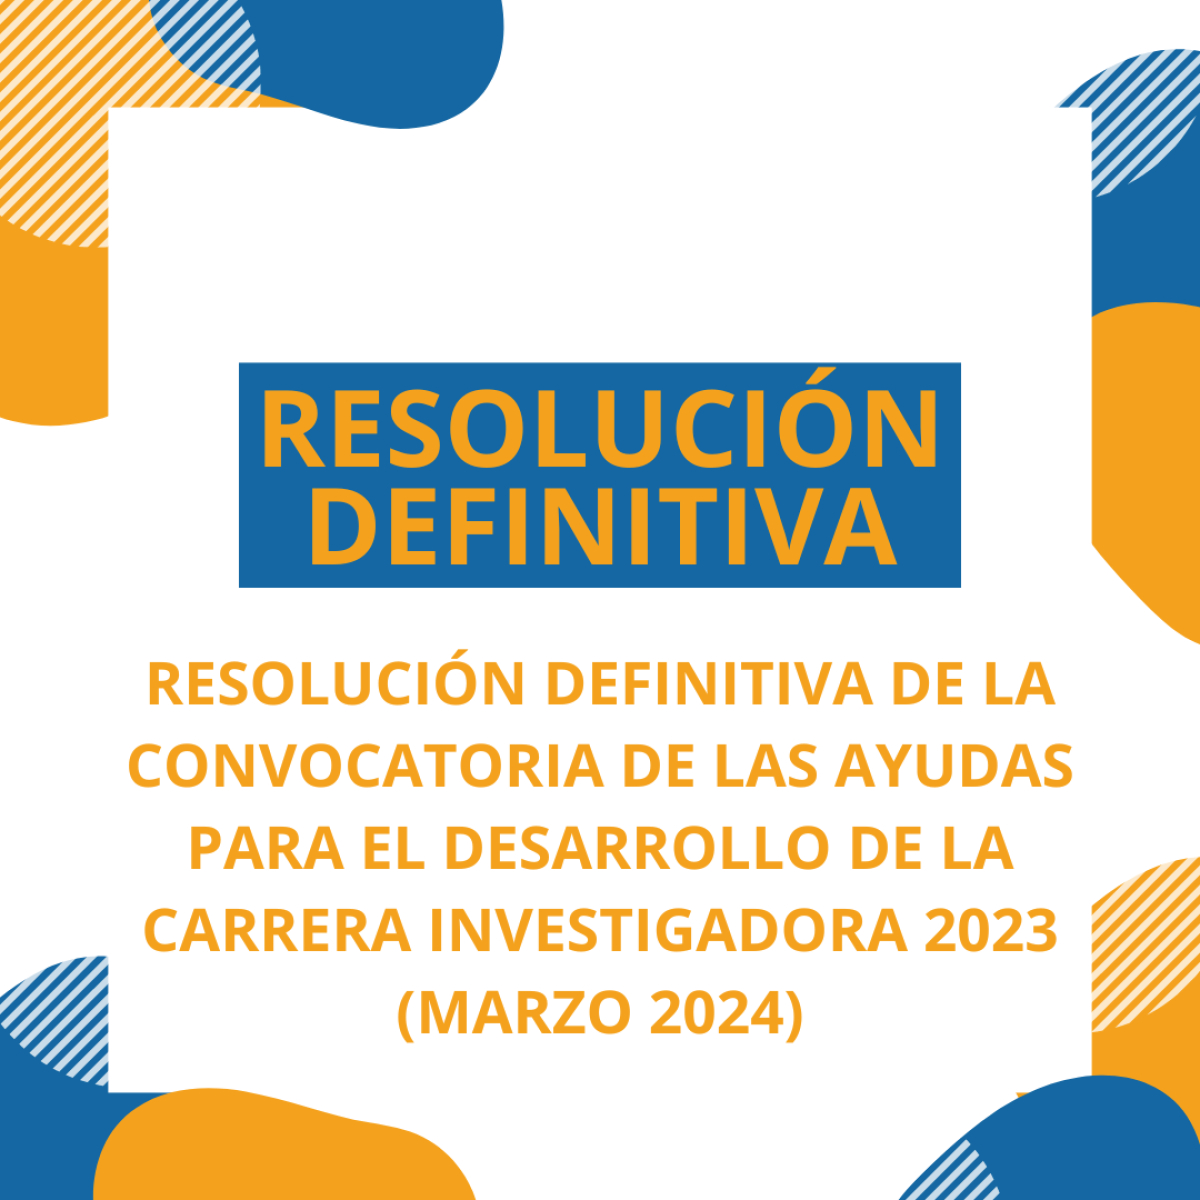 RESOLUCIÓN DEFINITIVA DE LA CONVOCATORIA DE LAS AYUDAS PARA EL DESARROLLO DE LA CARRERA INVESTIGADORA 2023 (MARZO 2024)